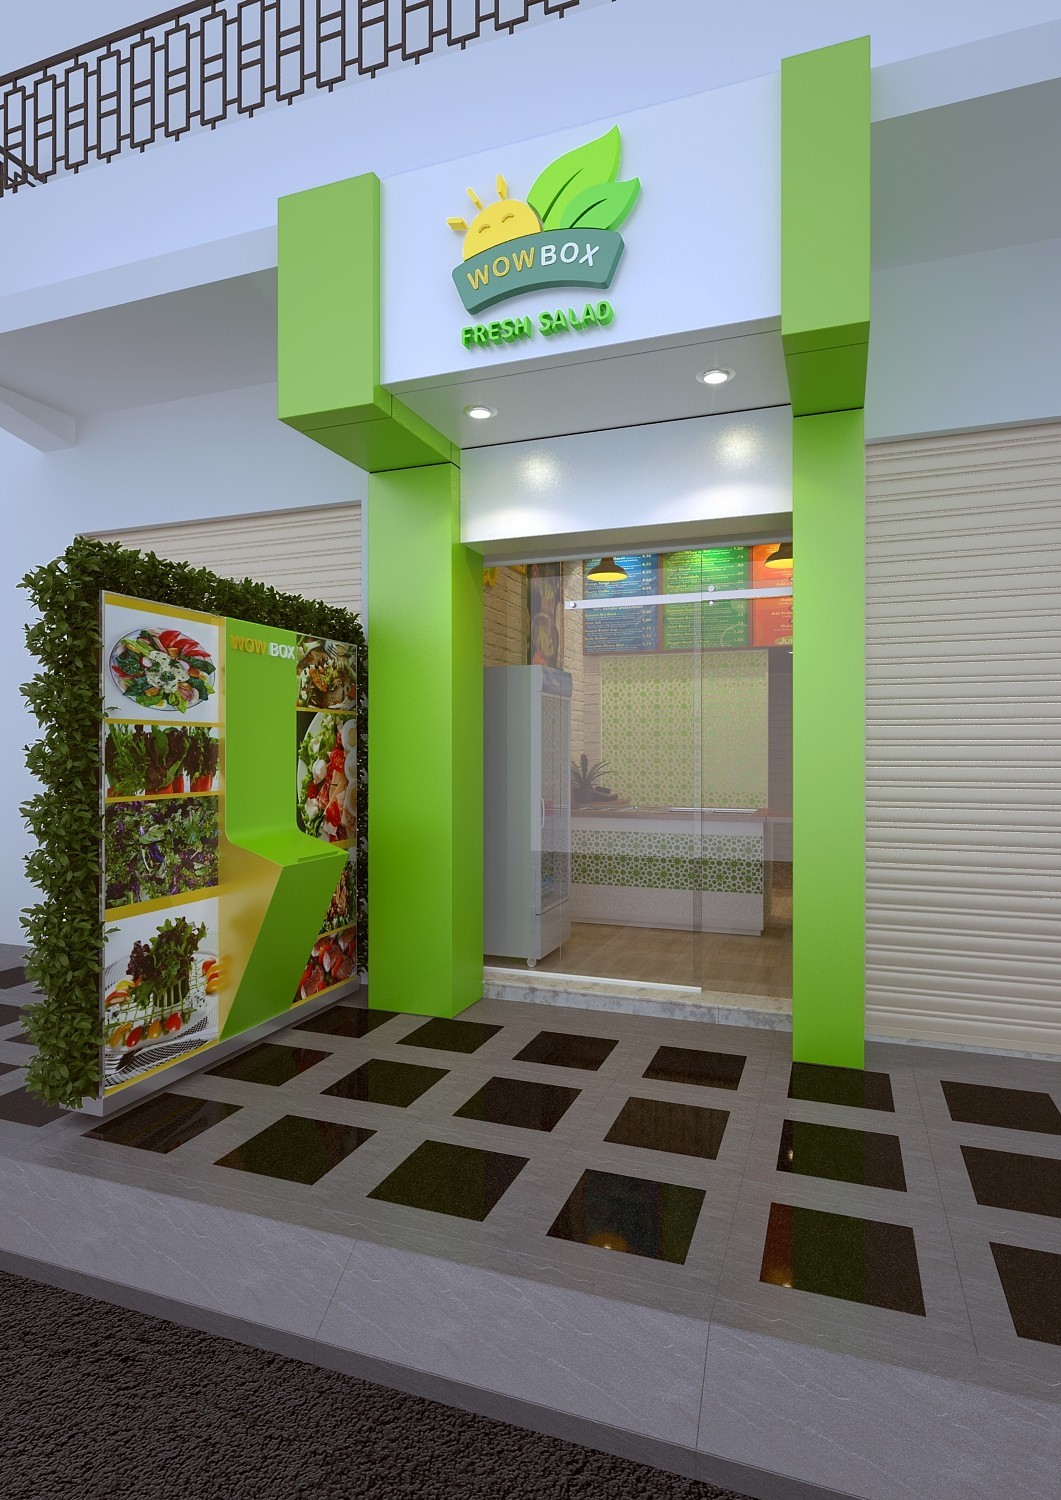 Thiết kế cửa hàng salad Wowbox